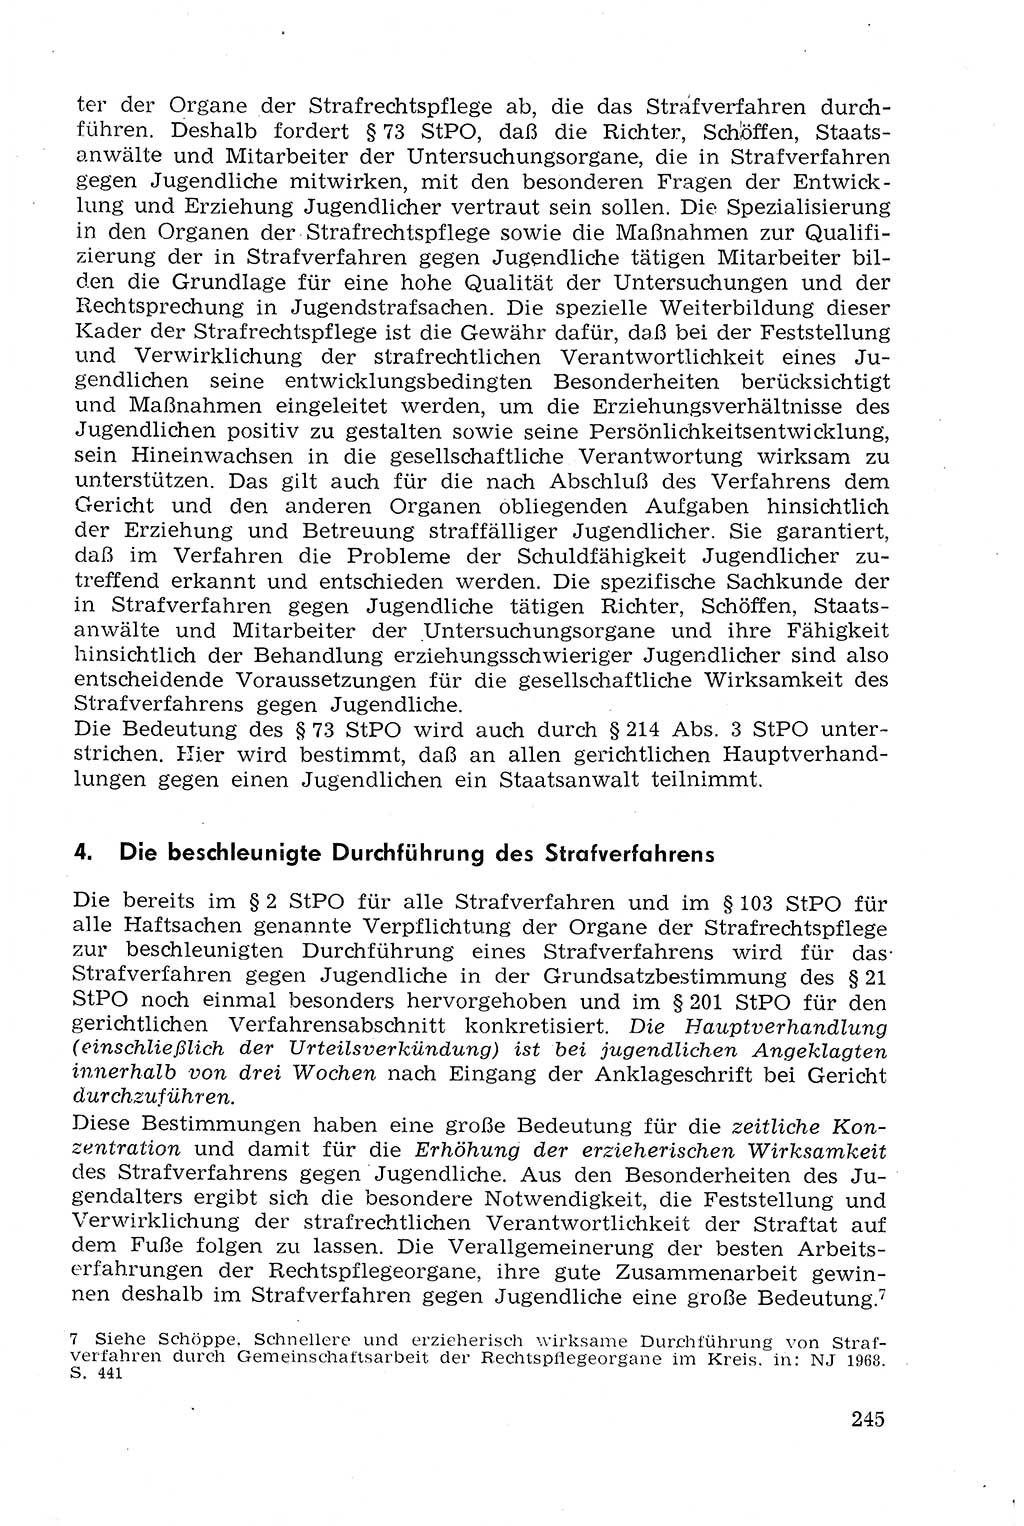 Strafprozeßrecht der DDR (Deutsche Demokratische Republik), Lehrmaterial 1969, Seite 245 (Strafprozeßr. DDR Lehrmat. 1969, S. 245)